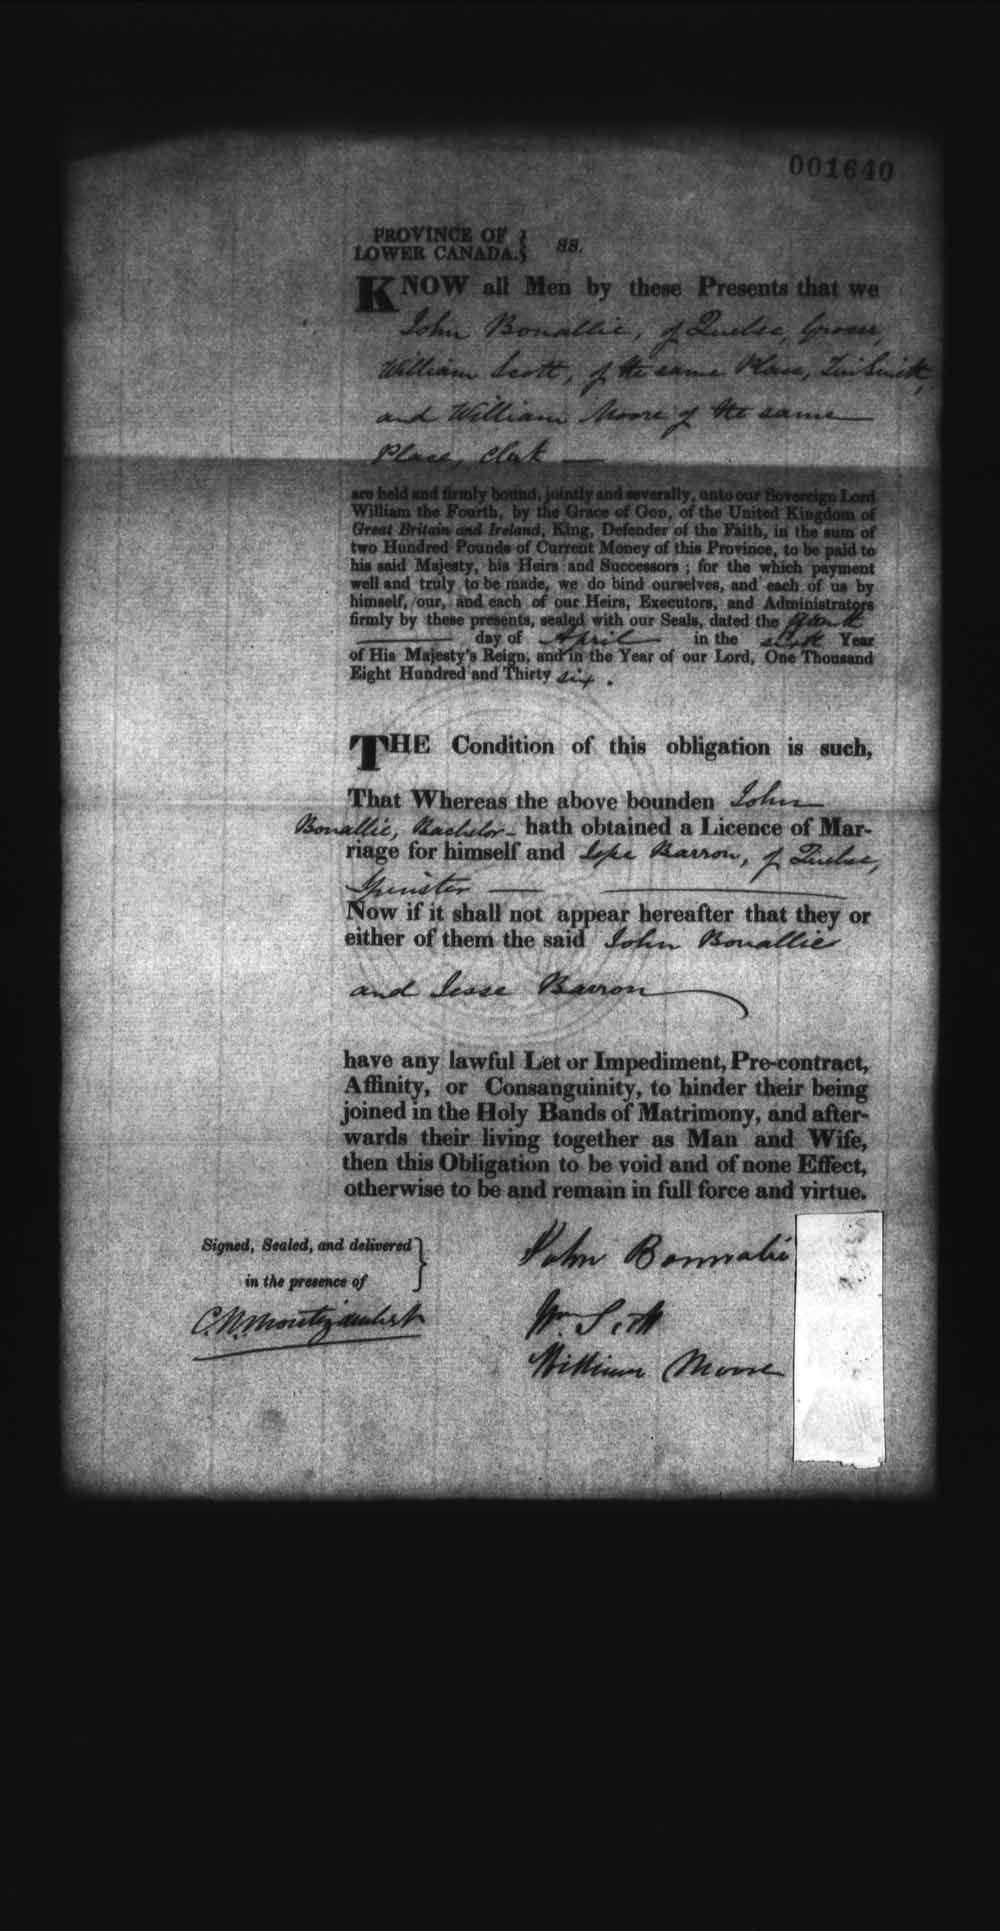 Page numérisé de Cautionnements de mariages pour le Haut-Canada et le Bas-Canada (1779-1865) pour l'image numéro: e008237965